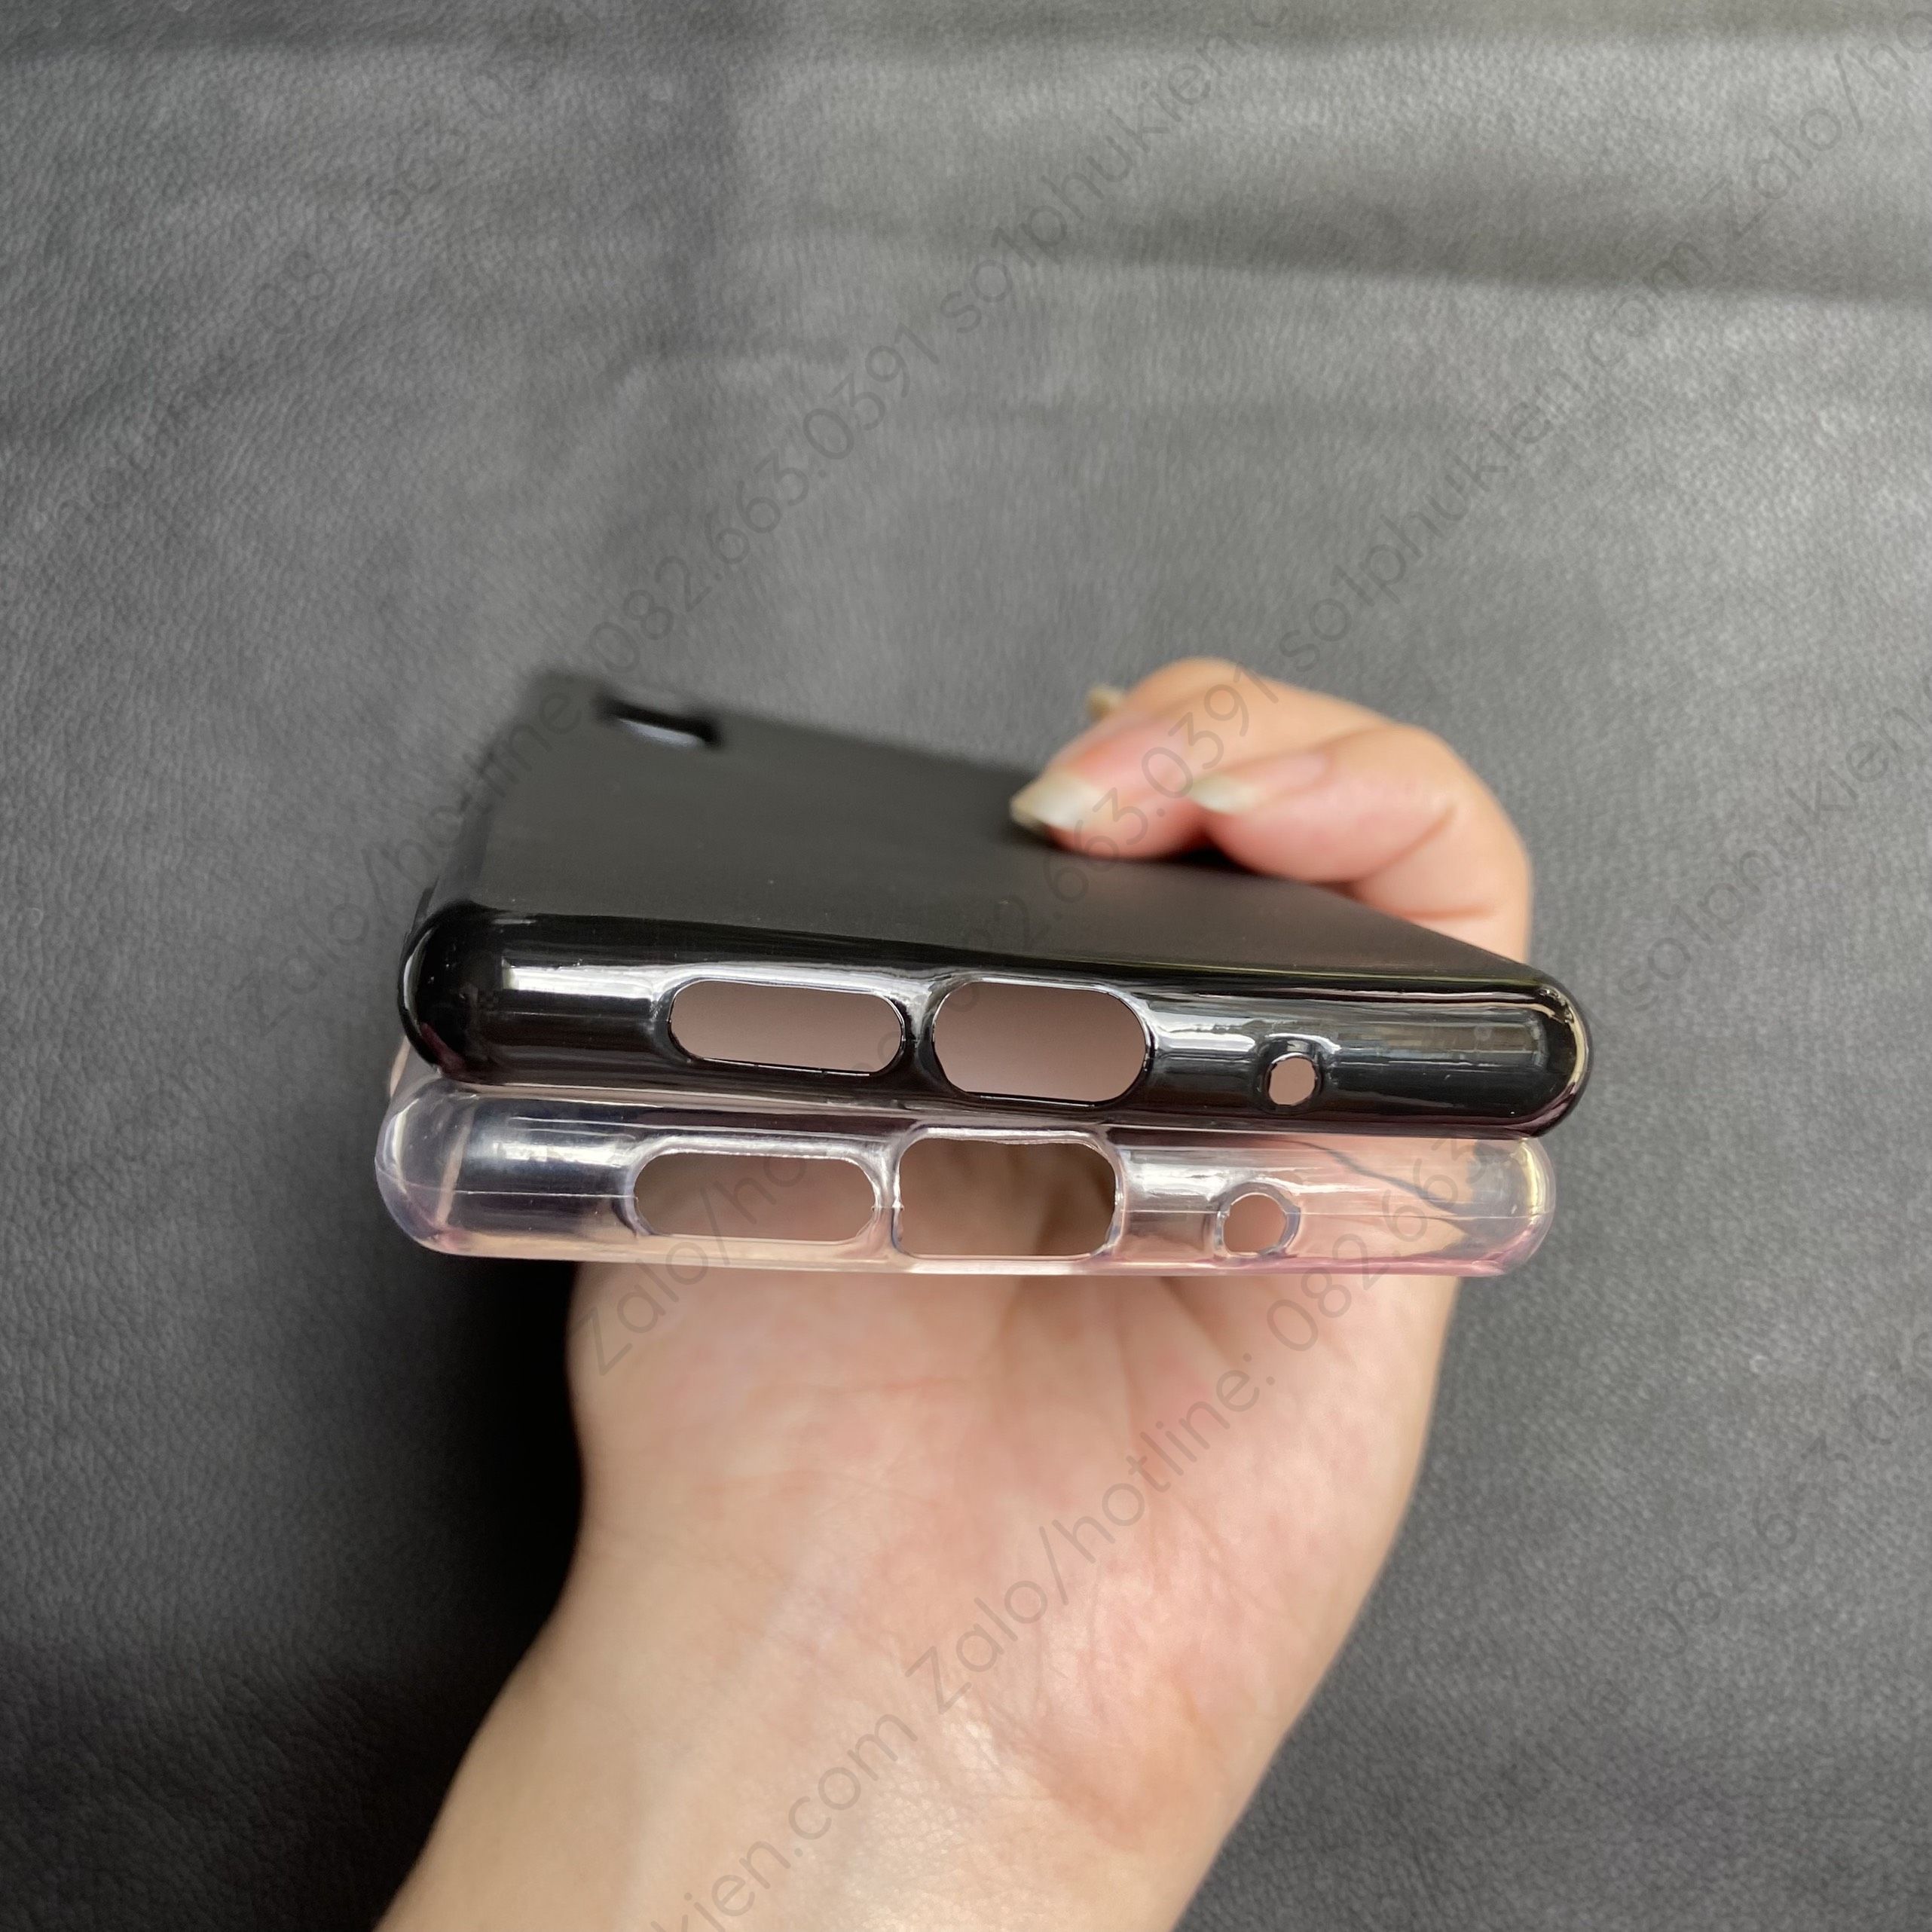 Ốp lưng Sony Xperia 5 /Xperia 5 II loại chống sốc, loại dẻo đen và loại dẻo trắng nhám cao cấp bền đẹp